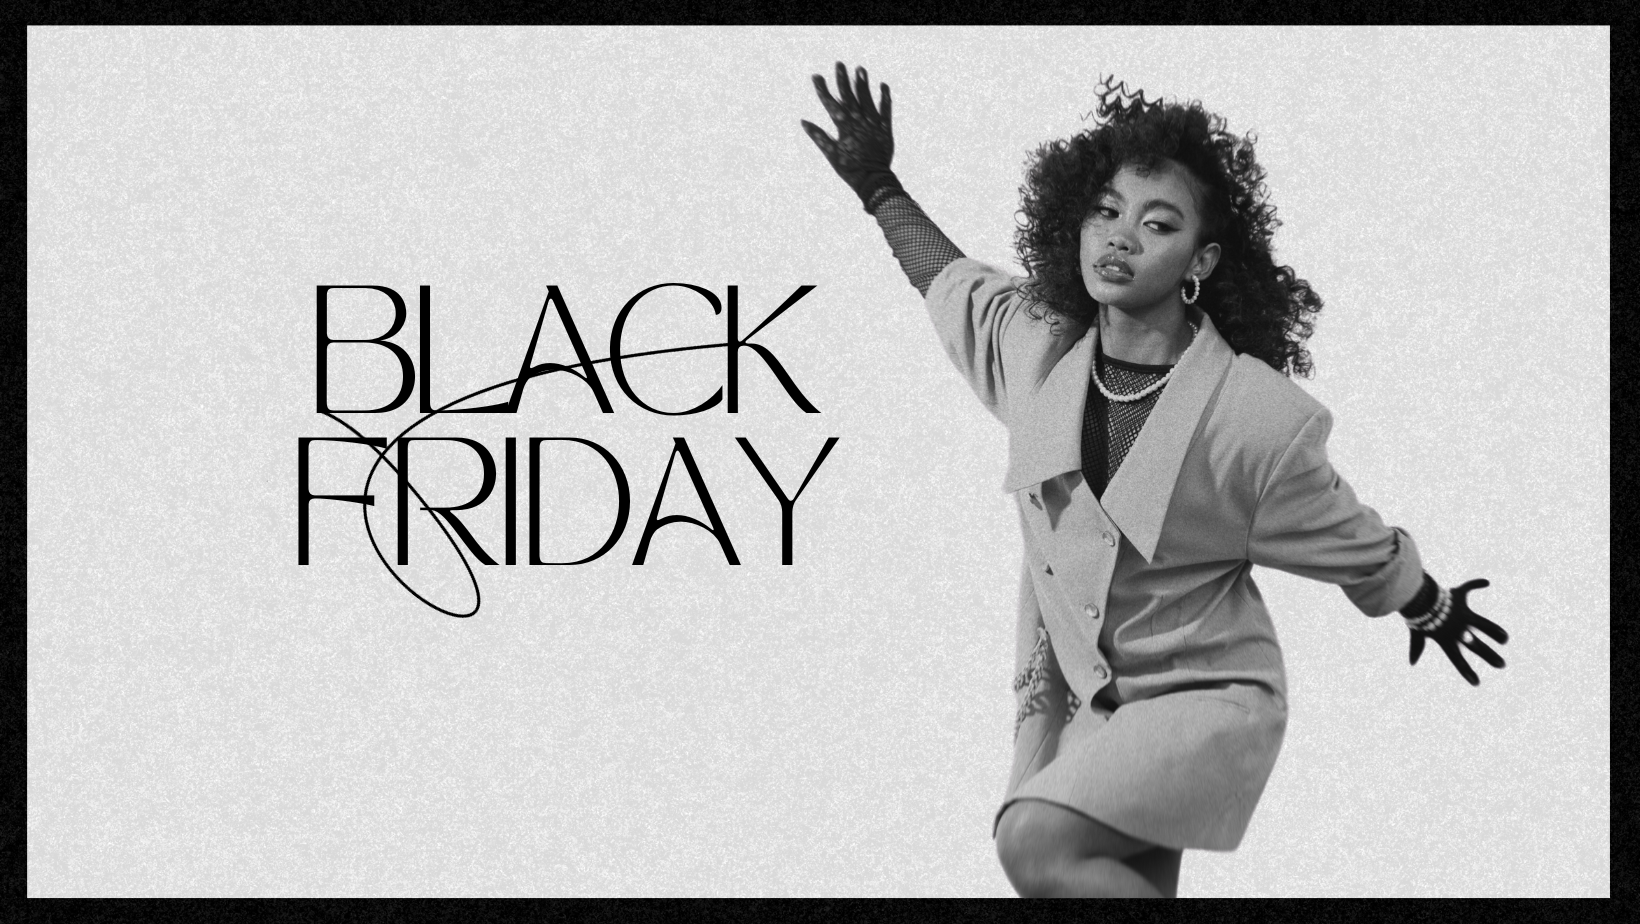 Master-black Friday-με-αυτές-στρατηγικές-πωλήσεις-για-καταστήματα-ρούχων-fanny-jin-ρούχα-χονδρέμποροι